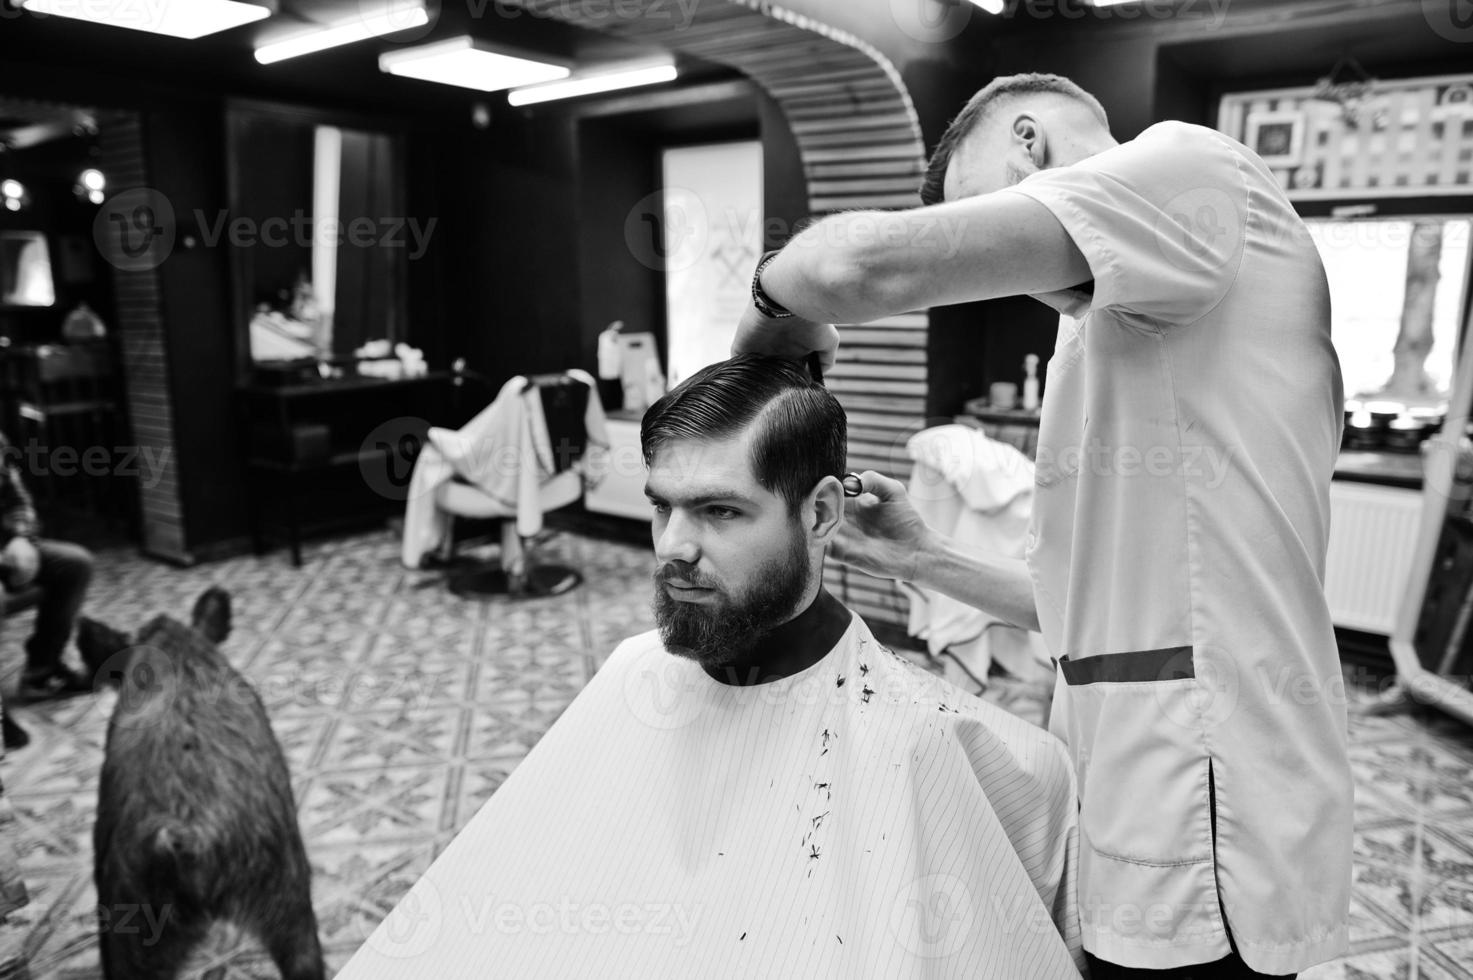 ung skäggig man klipps av frisören medan han sitter i stolen på frisörsalongen. frisörsjäl. foto